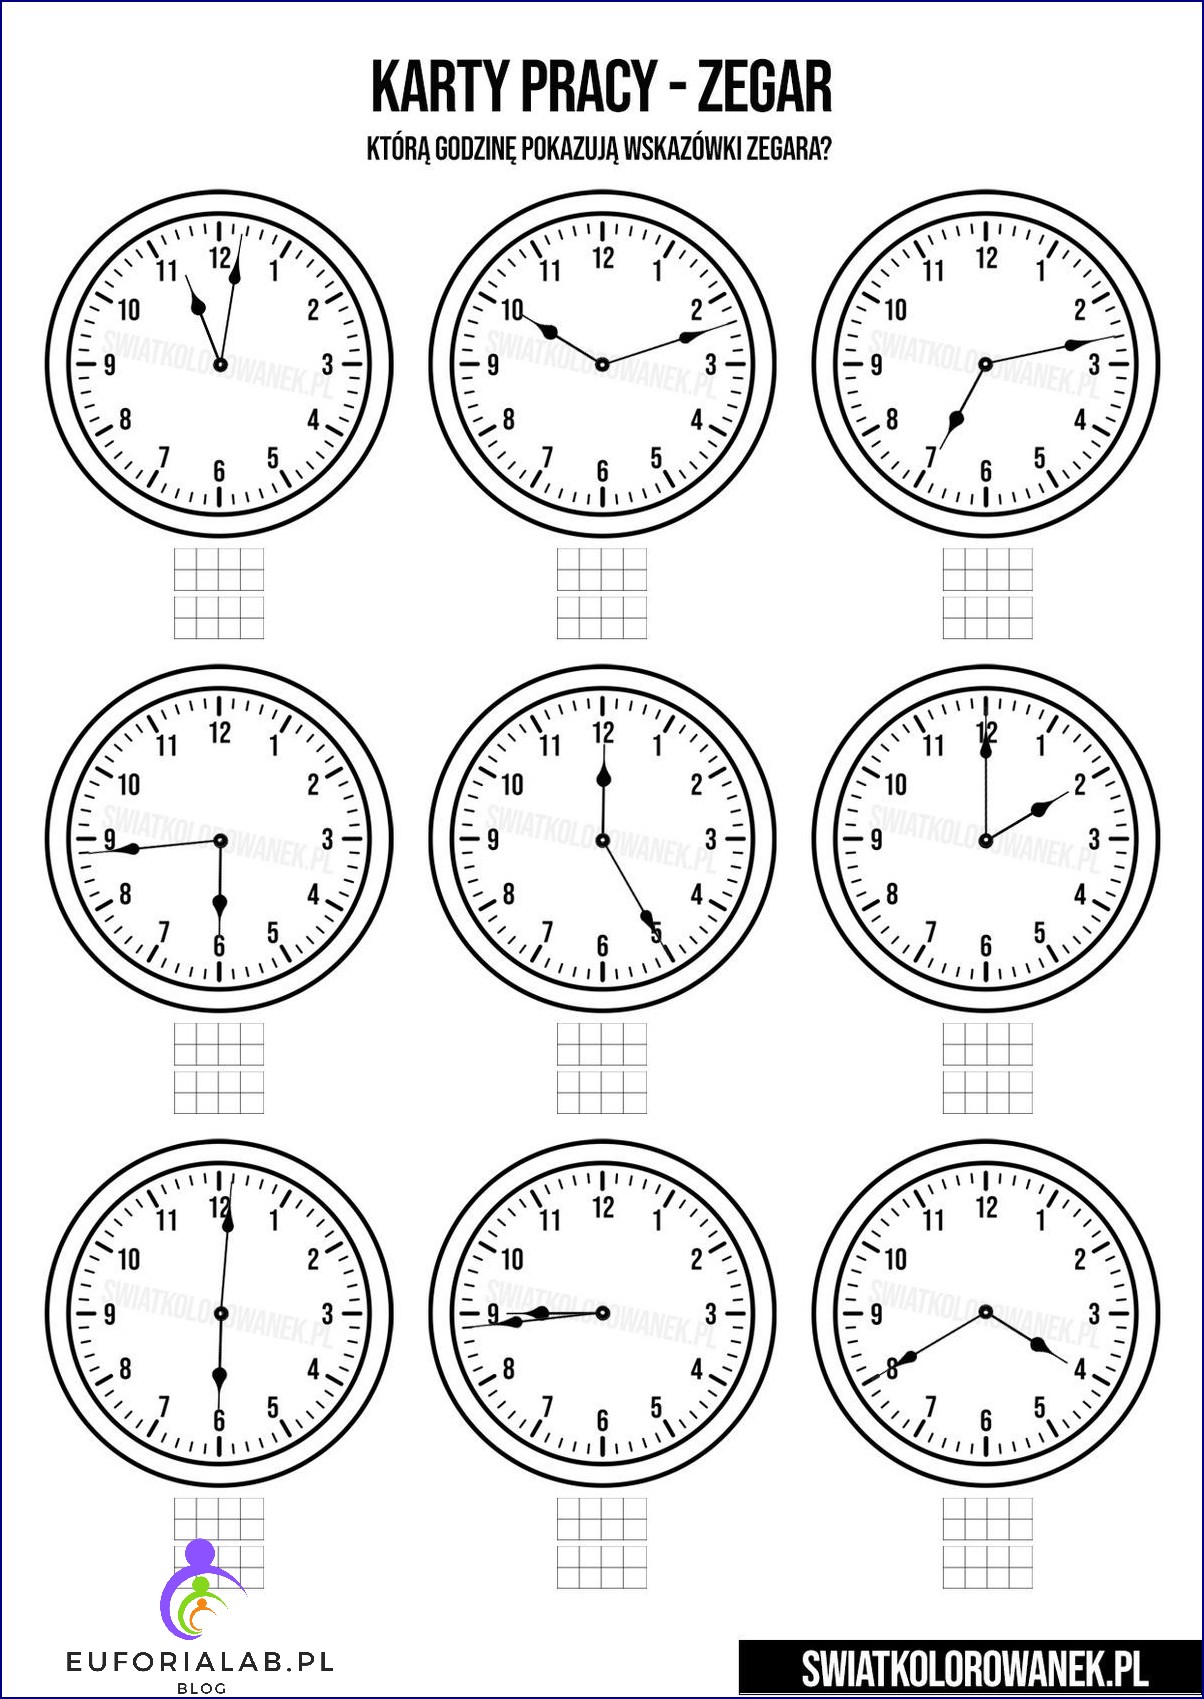 Nauka zegara dla dzieci